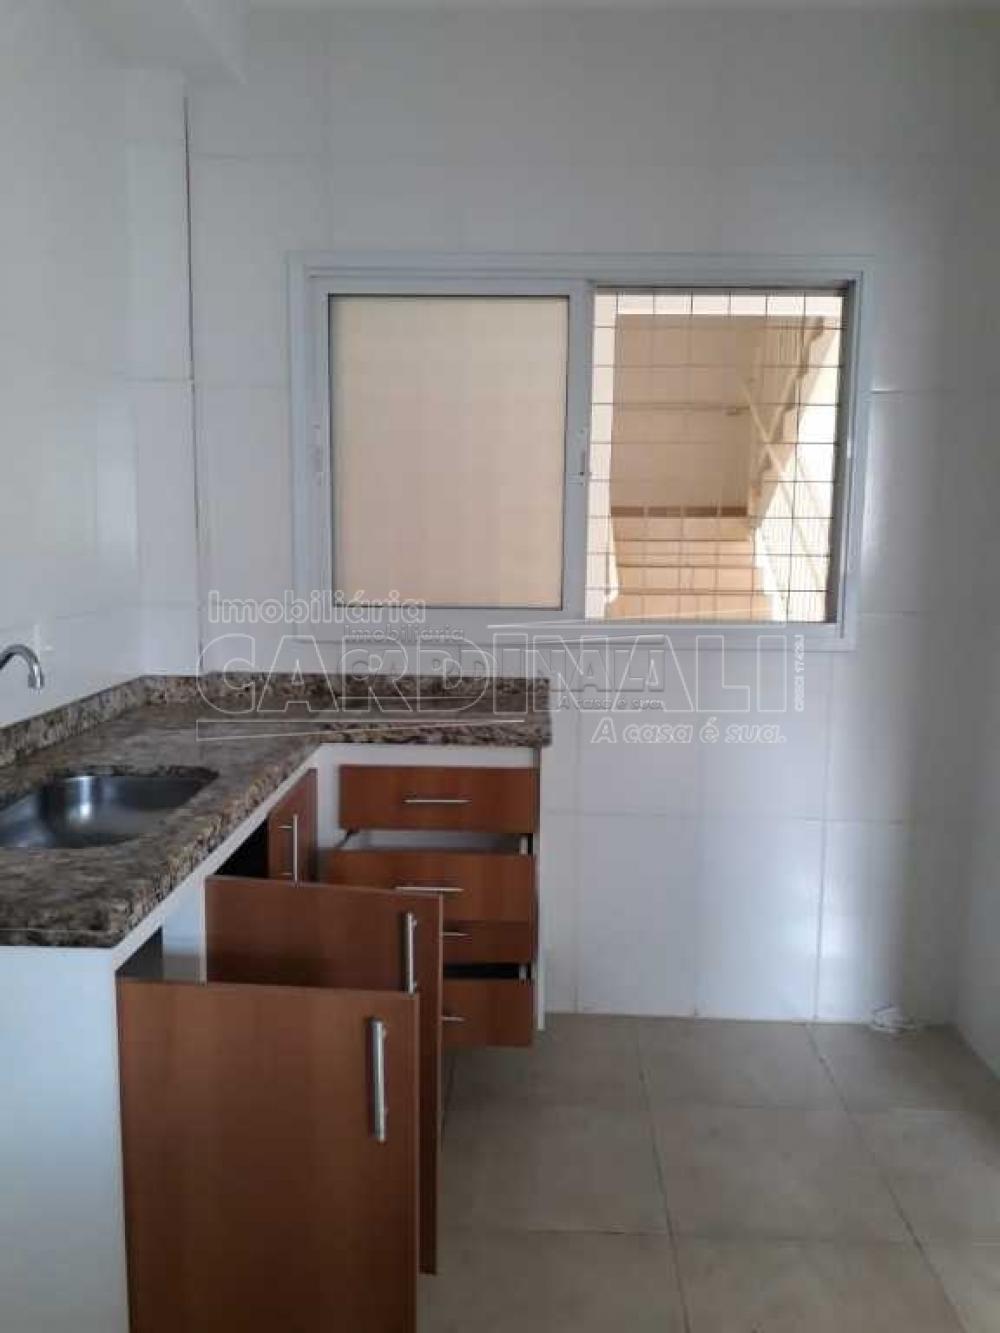 Alugar Apartamento / Padrão em São Carlos R$ 1.300,00 - Foto 7